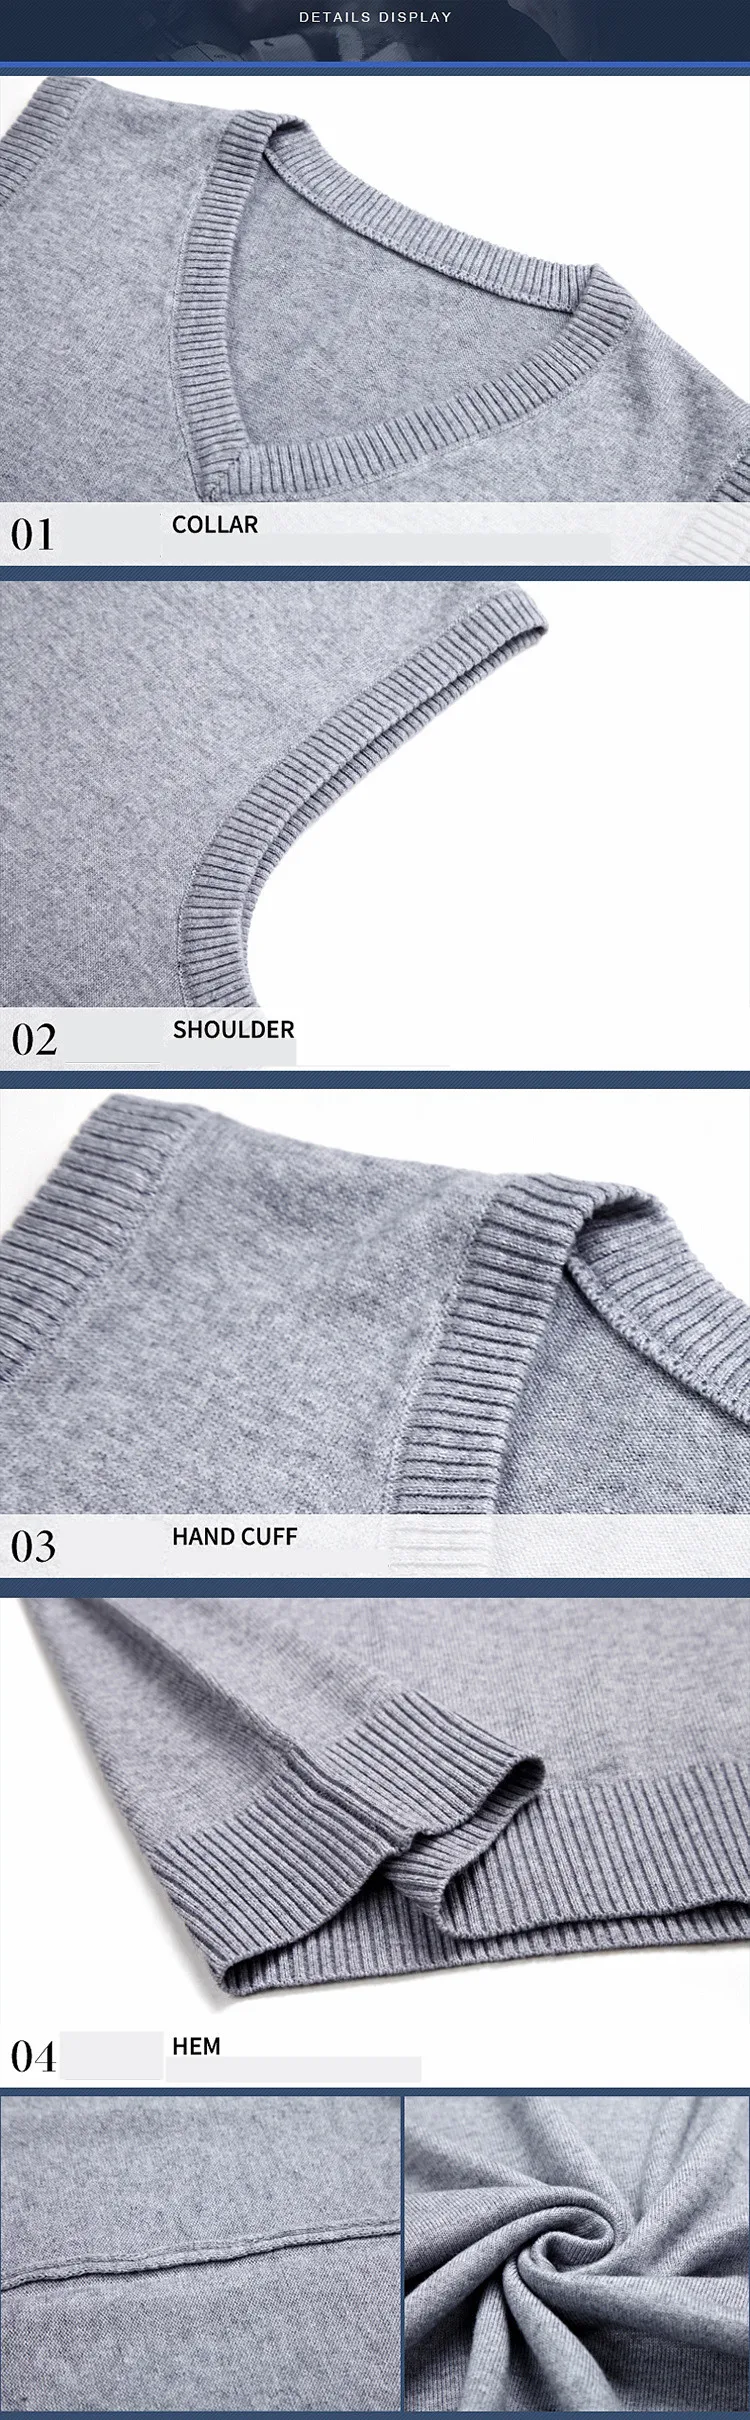 MRMT бренд осень зима мужской свитер жилет чистый цвет шерстяной пуловер для мужчин жилет V воротник свитер жилет